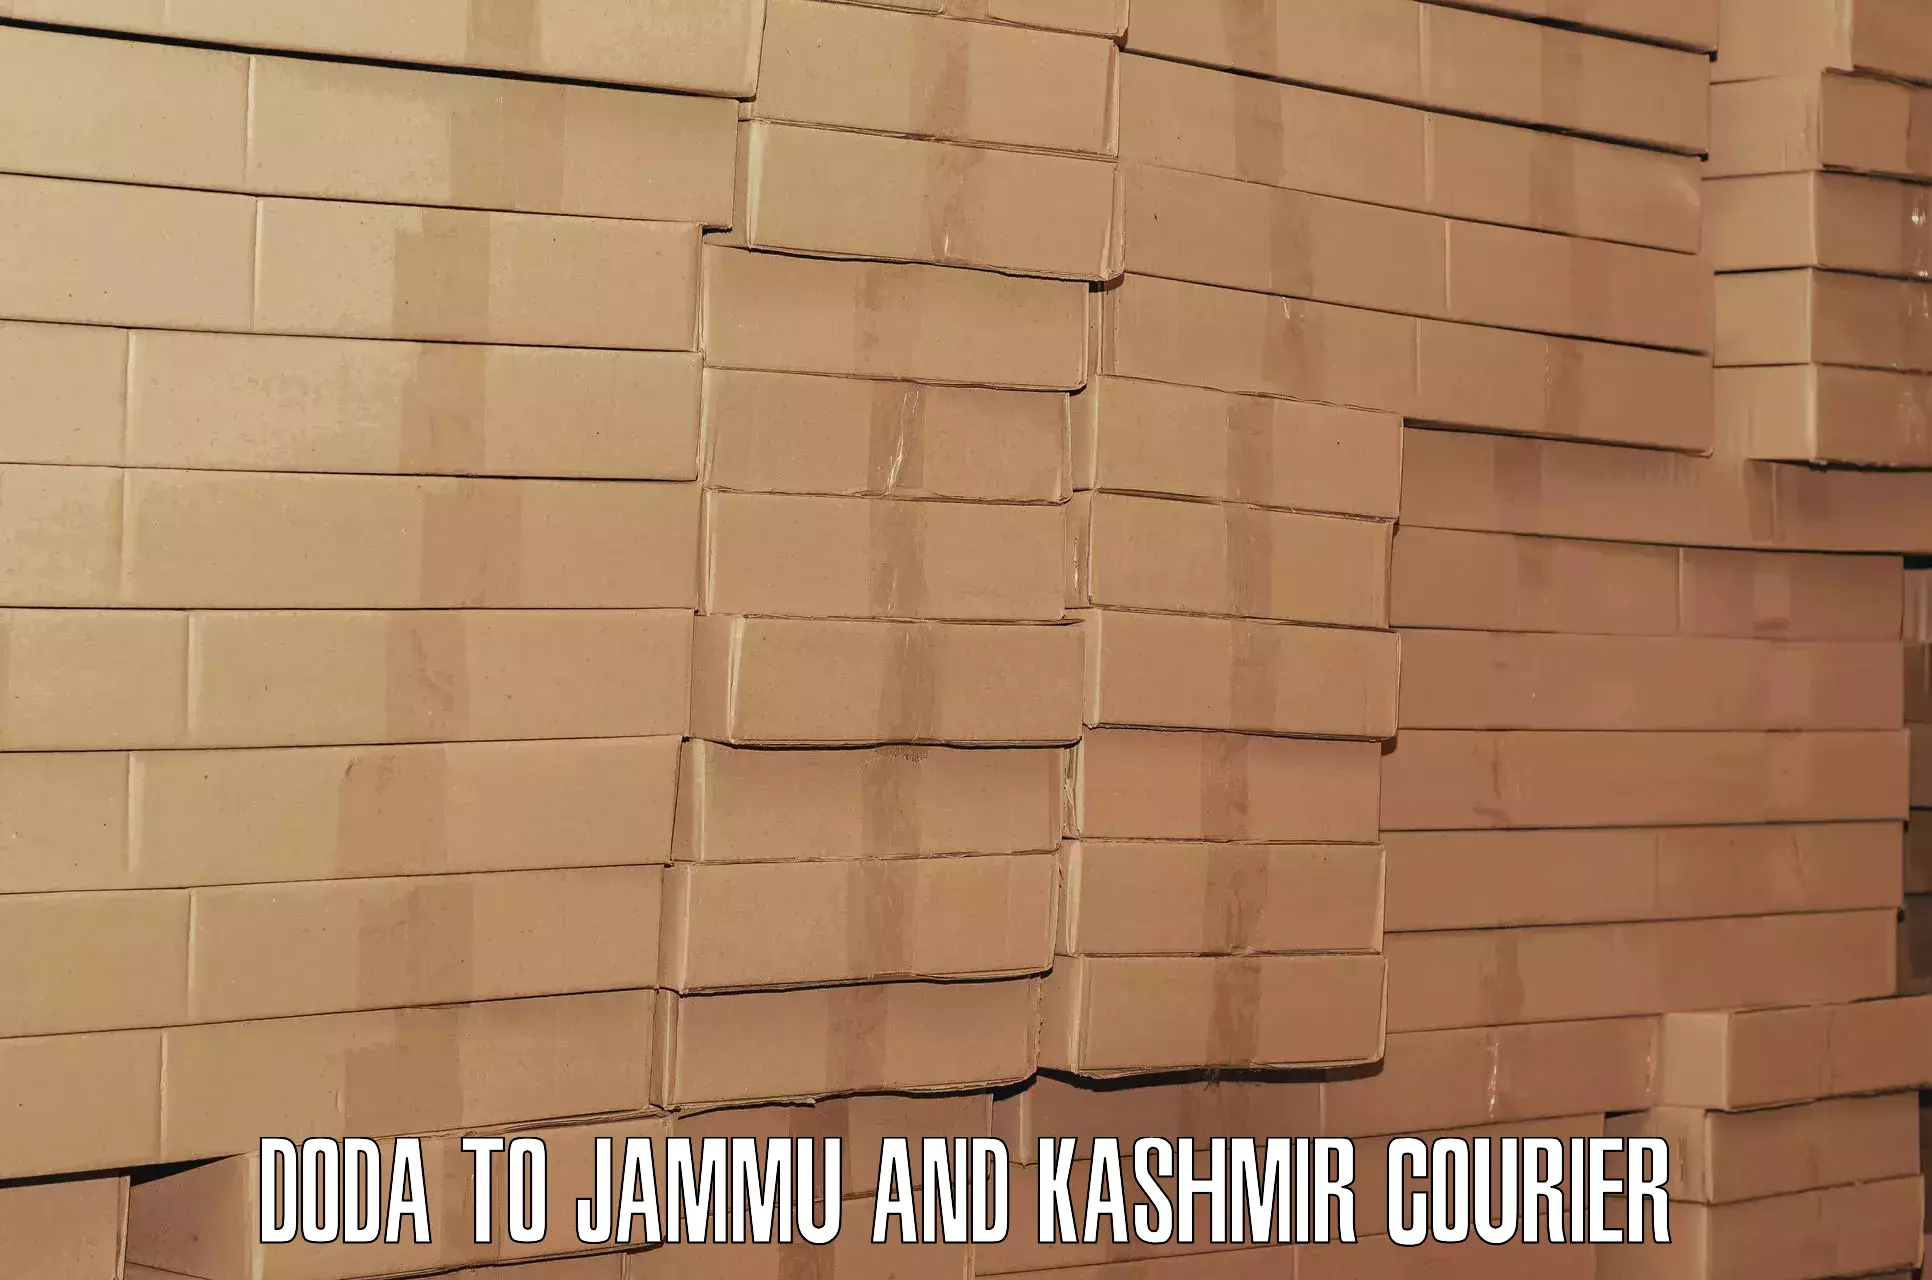 Customized luggage delivery Doda to University of Jammu